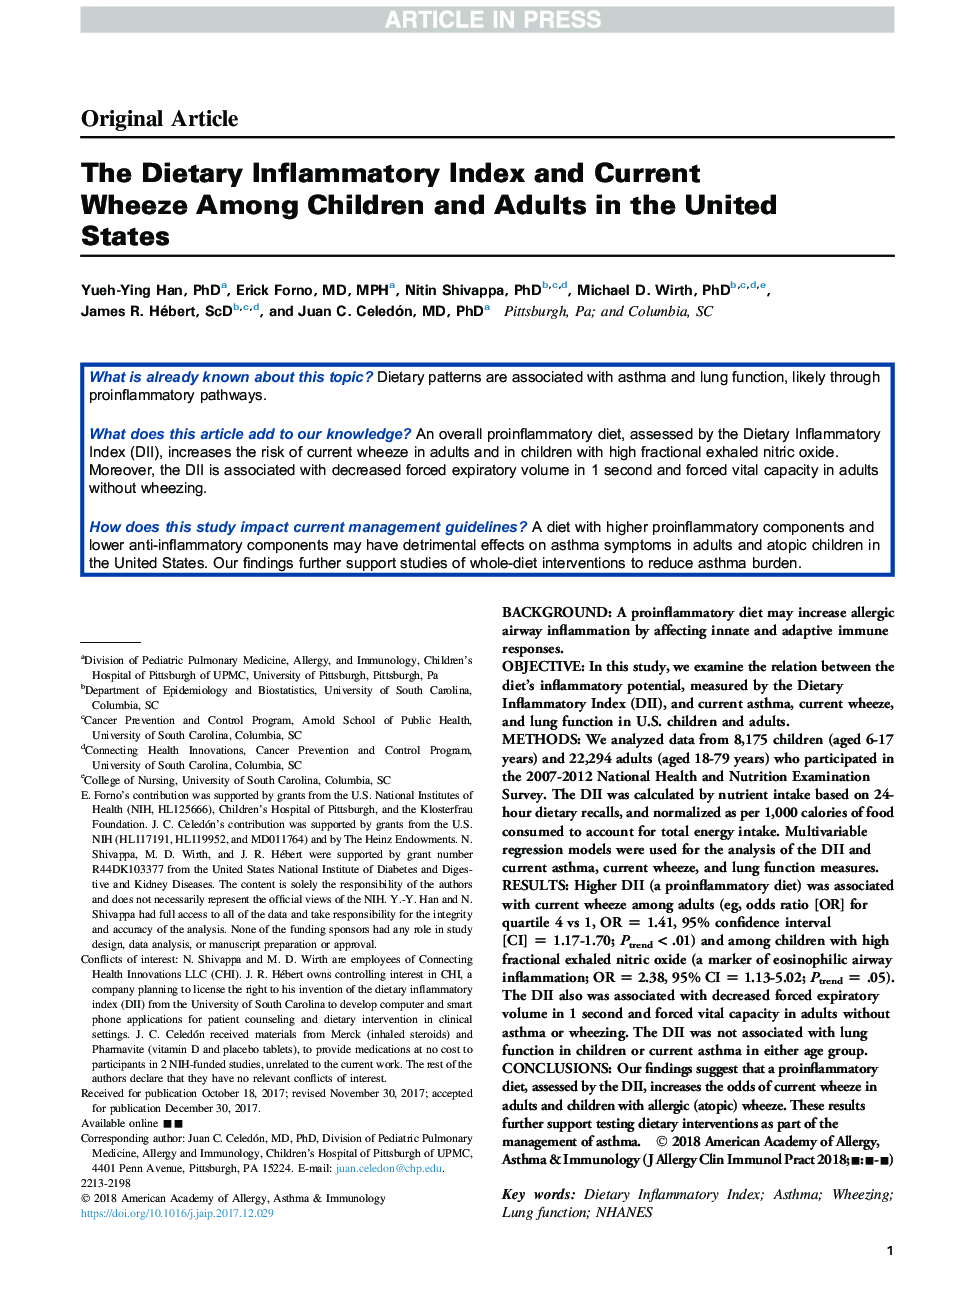 شاخص التهاب رژیم غذایی و مرگ و میر در میان کودکان و بزرگسالان در ایالات متحده 